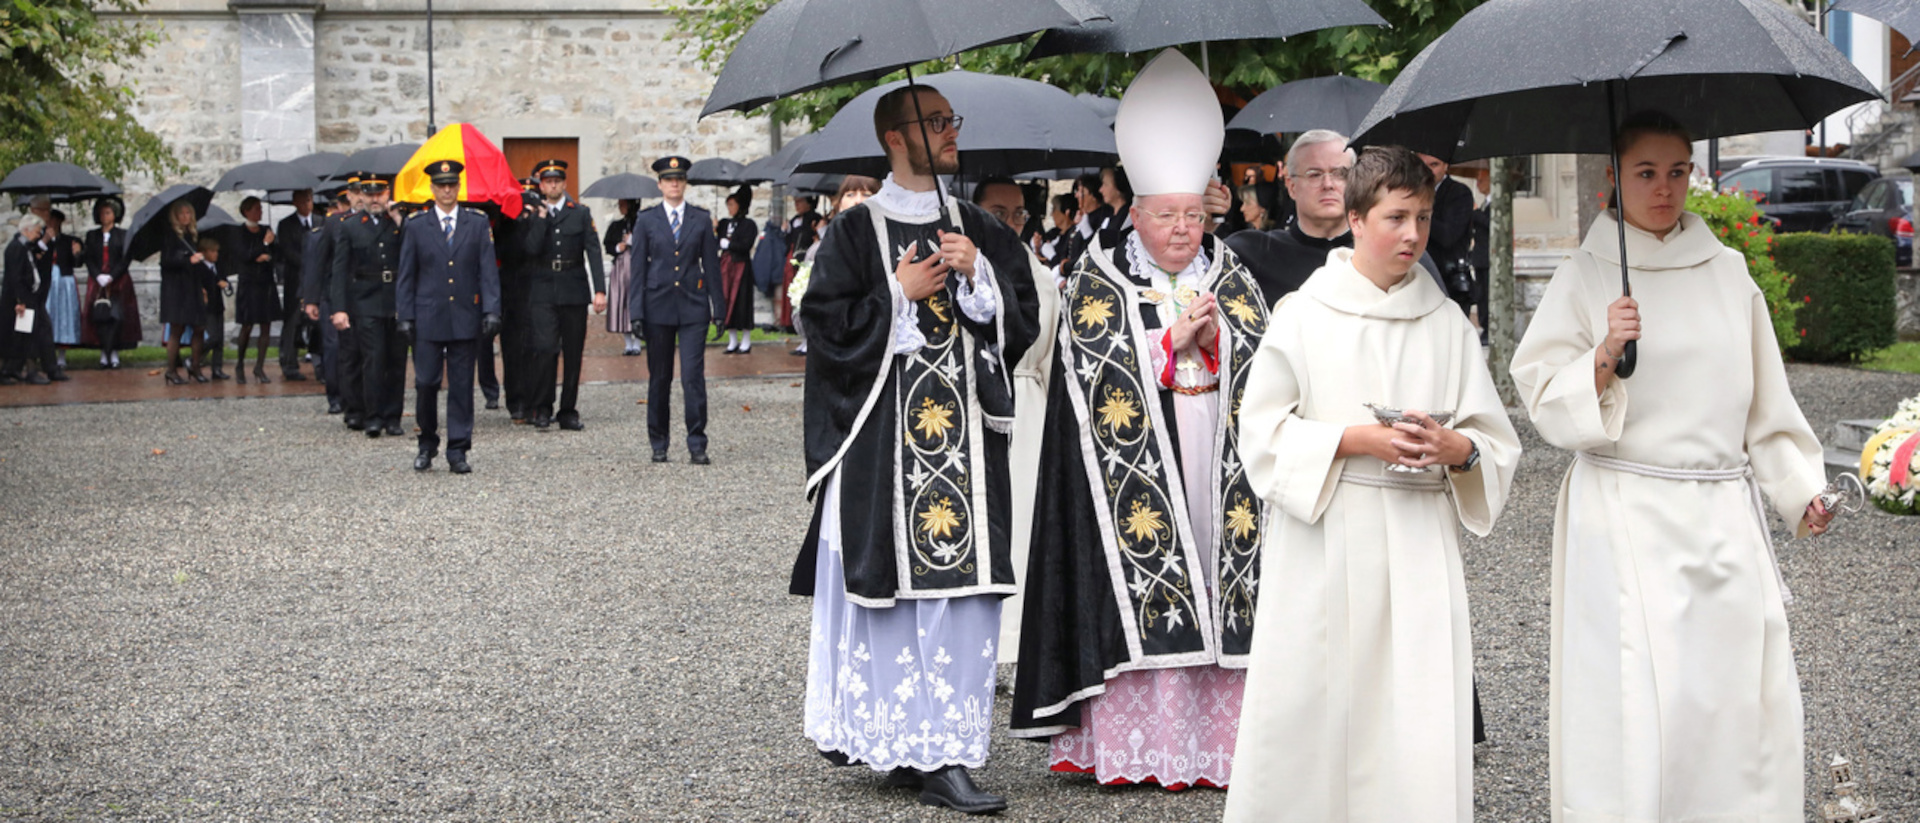 Archbishop Wolfgang Haas at the abdication of Princess Marie von und zu Liechtenstein.